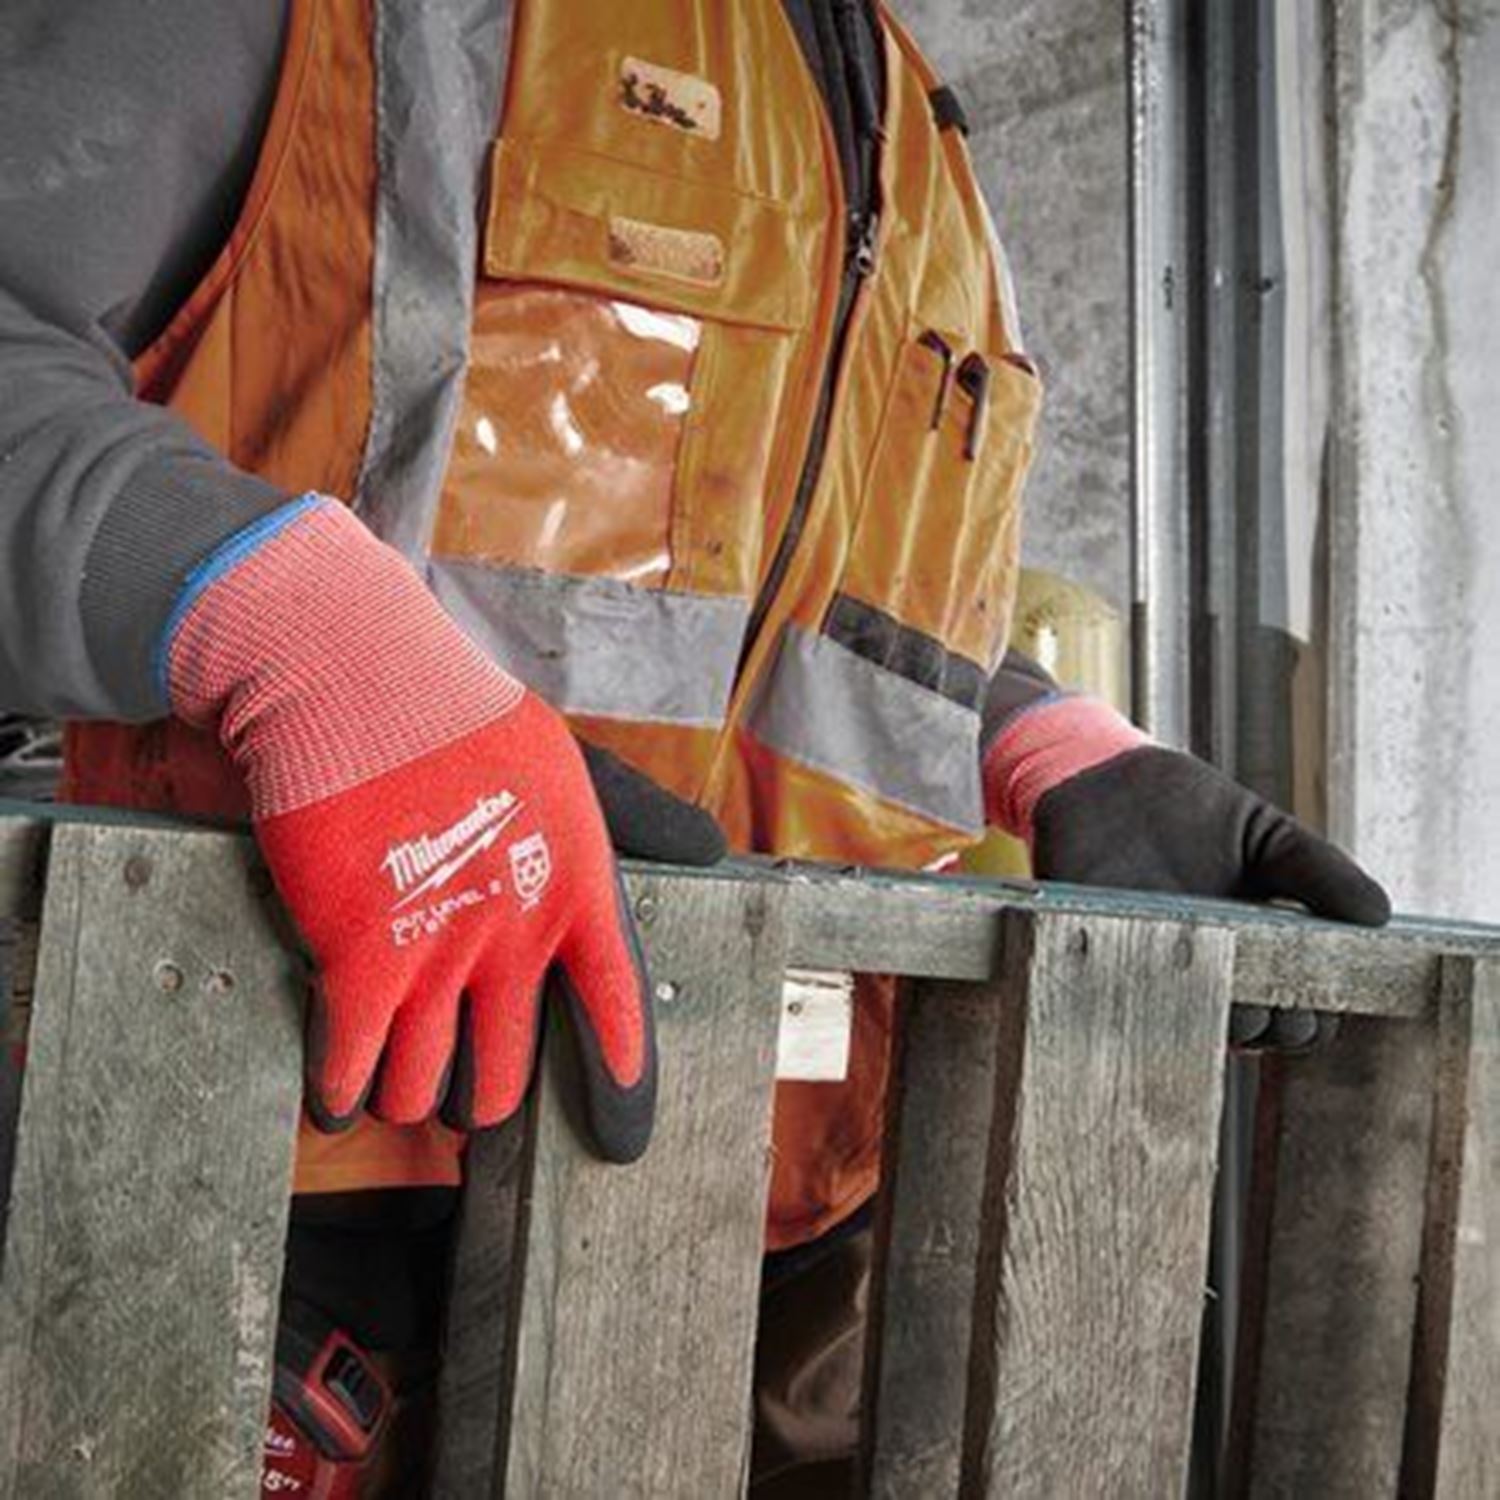 Снимка на Пакет 12 бр. зимни устойчиви на порязване ръкавици CUT B, S, 4932480606, Milwaukee